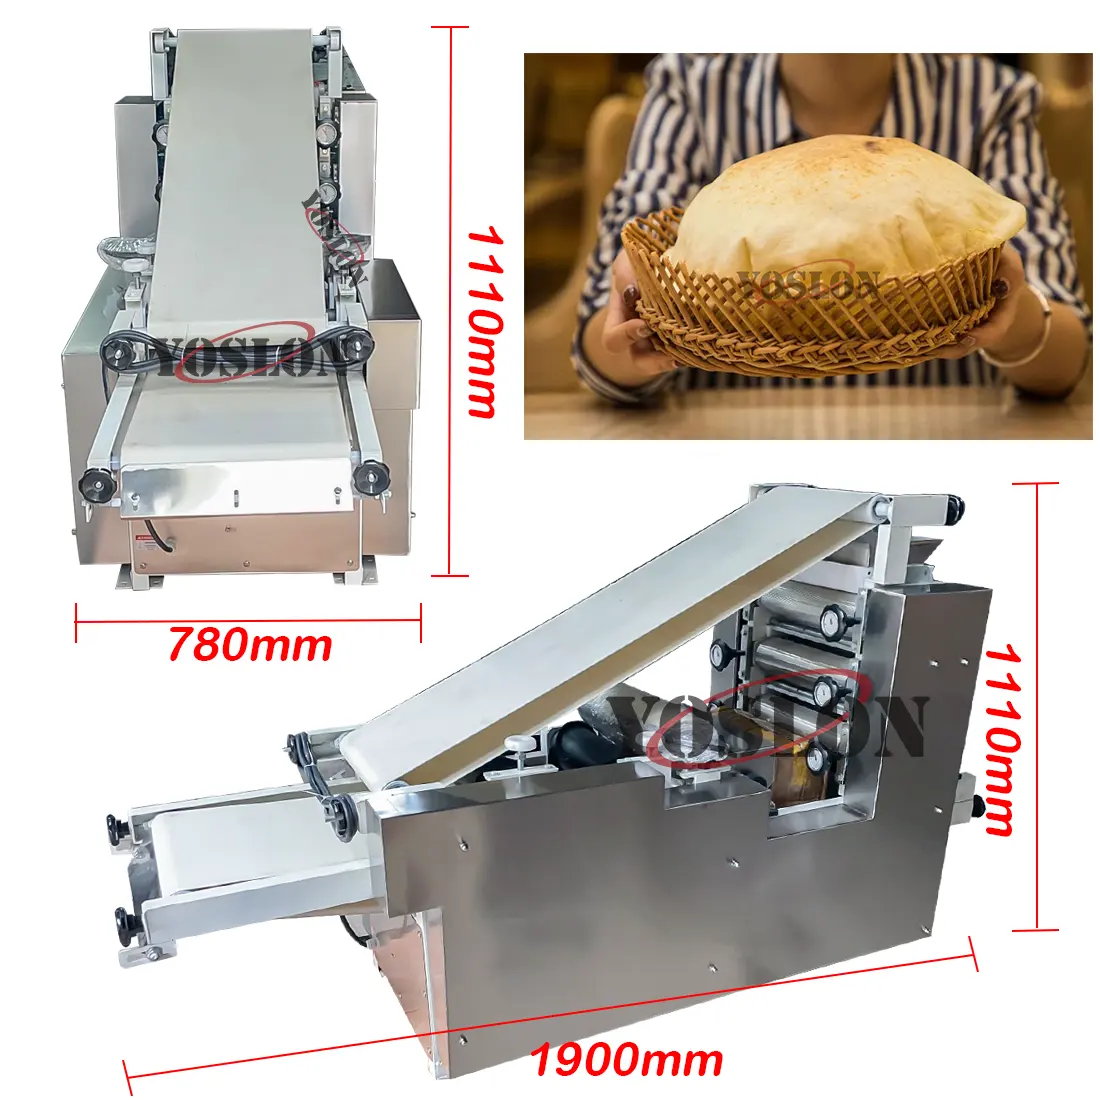 Yoslon-horno de pan eléctrico/de Gas automático Industrial, línea de producción de pastel árabe, máquina de fabricación de pan de la India